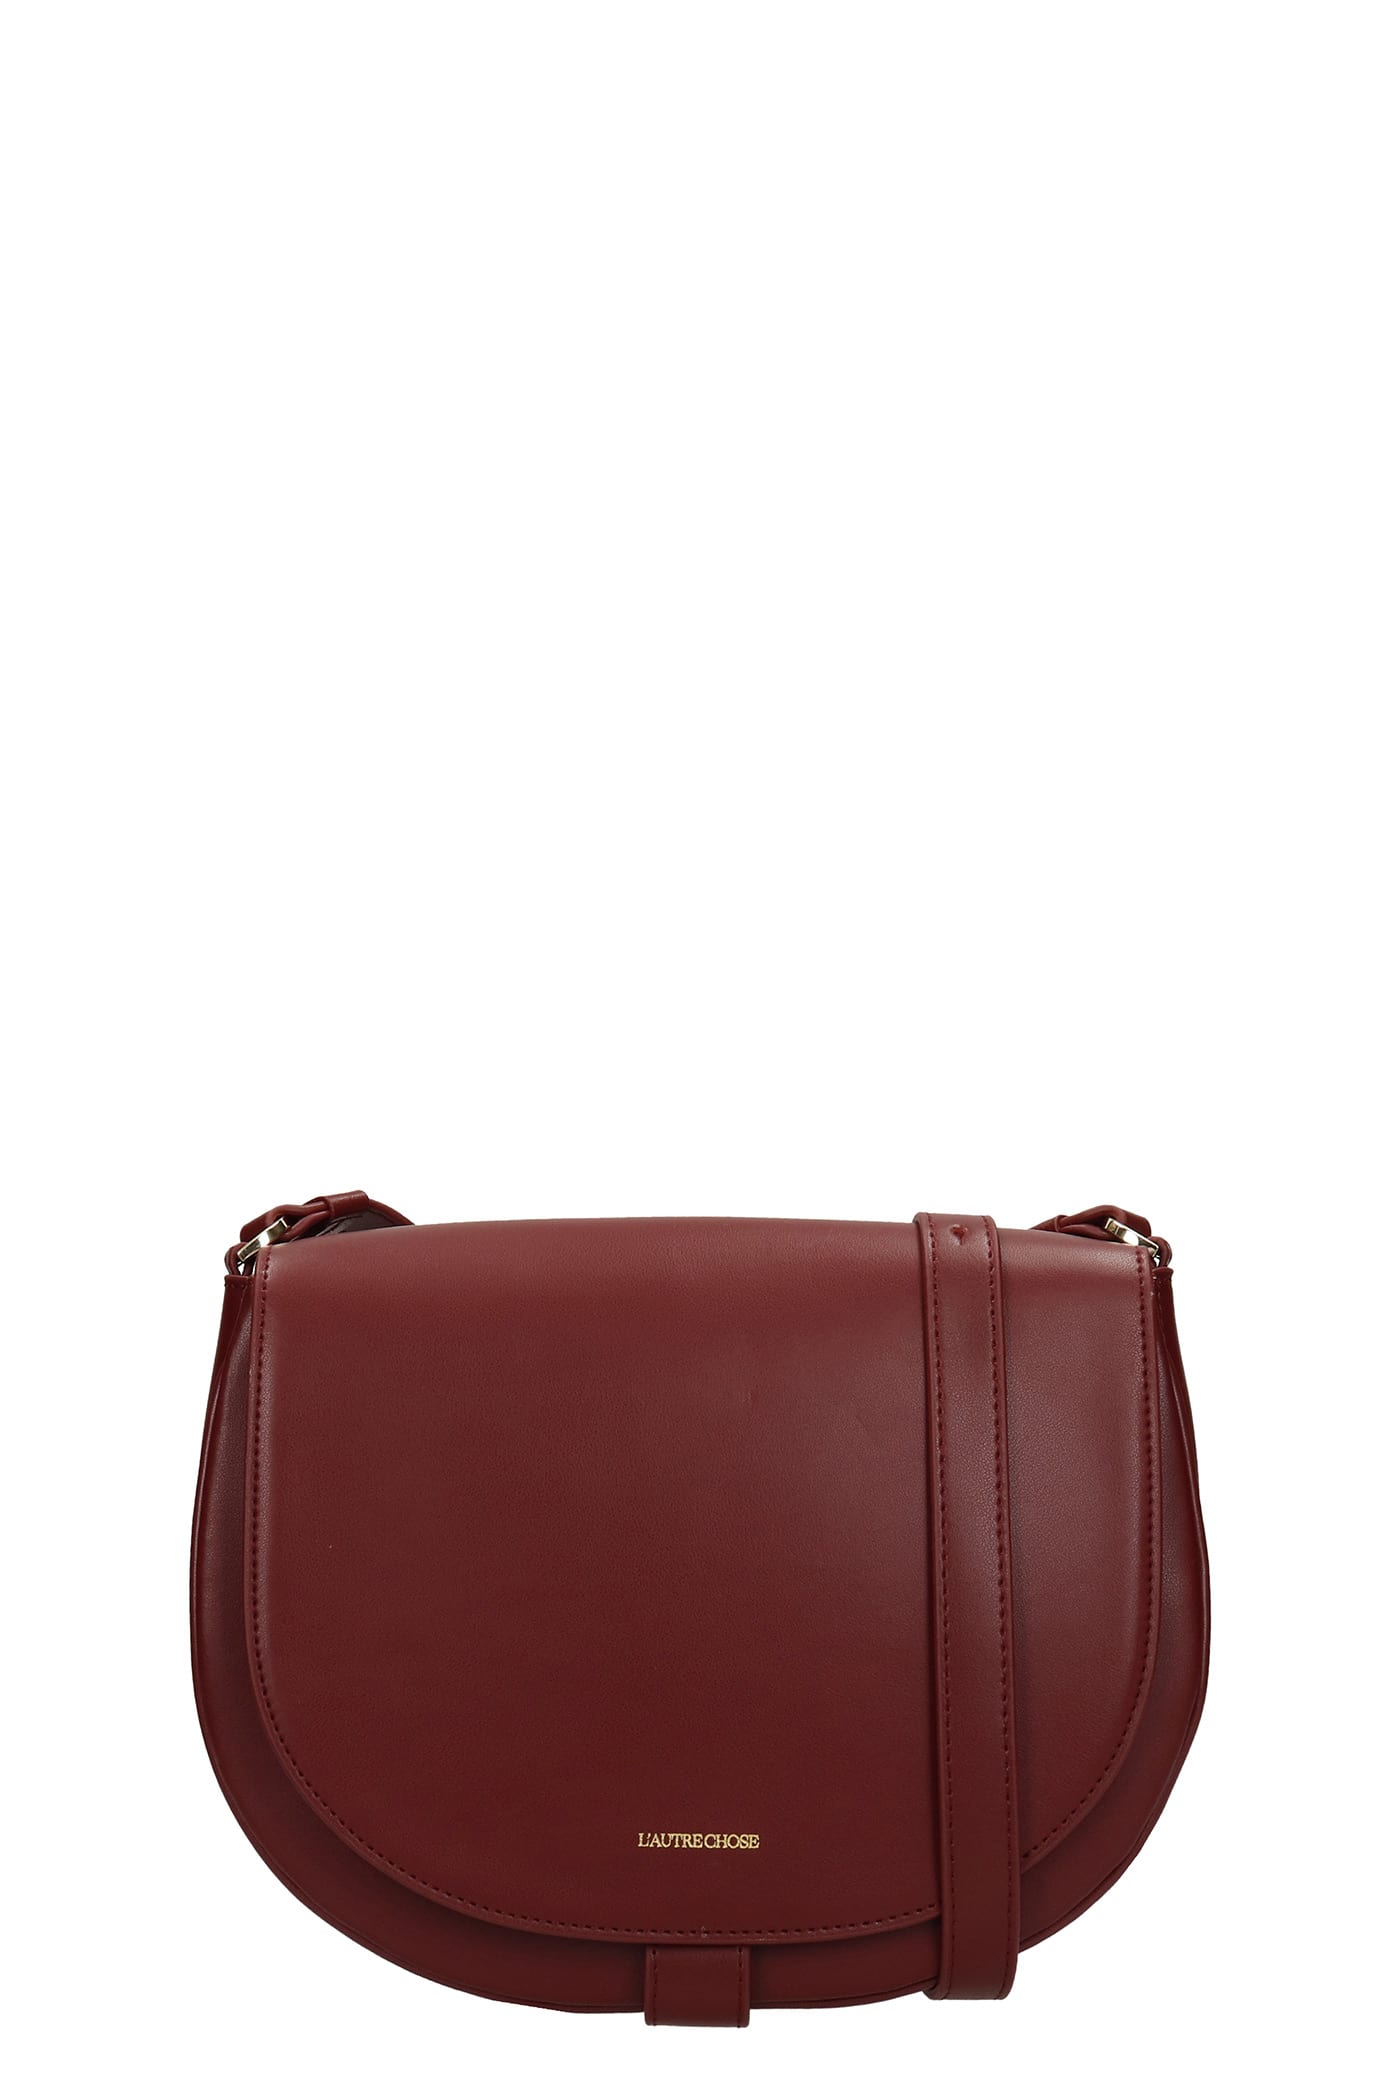 LAutre Chose Shoulder Bag In Bordeaux Leather